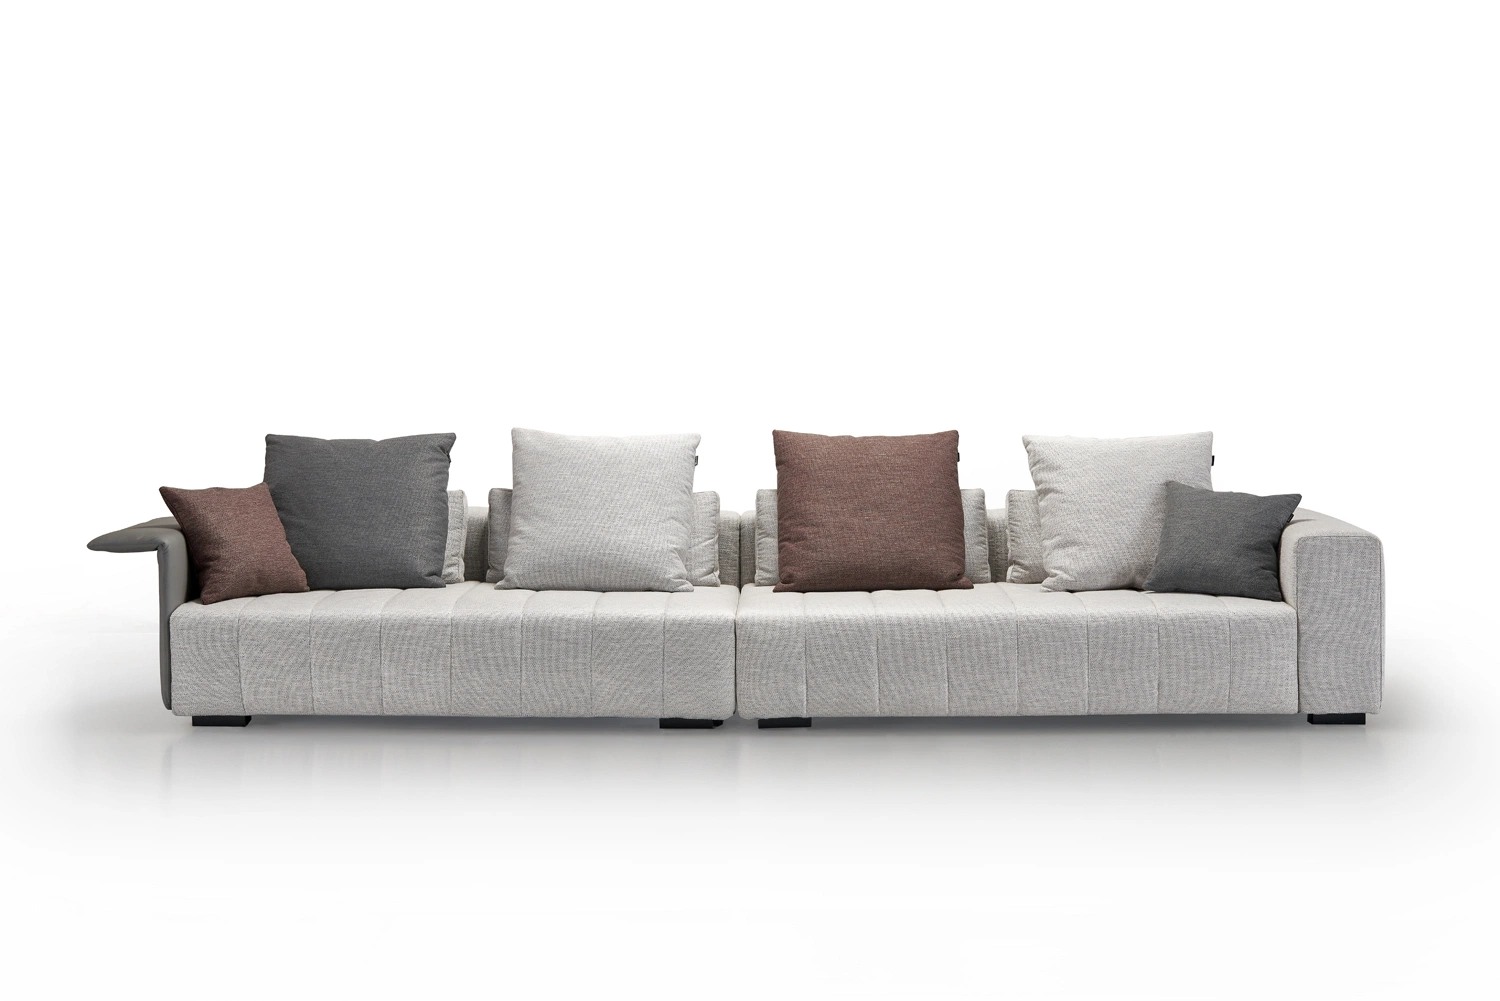 أثاث منزل إيطالي معاصر حديث لفيلا المعيشة غرفة ديفان أريكة جلدية مقطعية من القماش وأريكة يمكن تحويلها إلى سرير